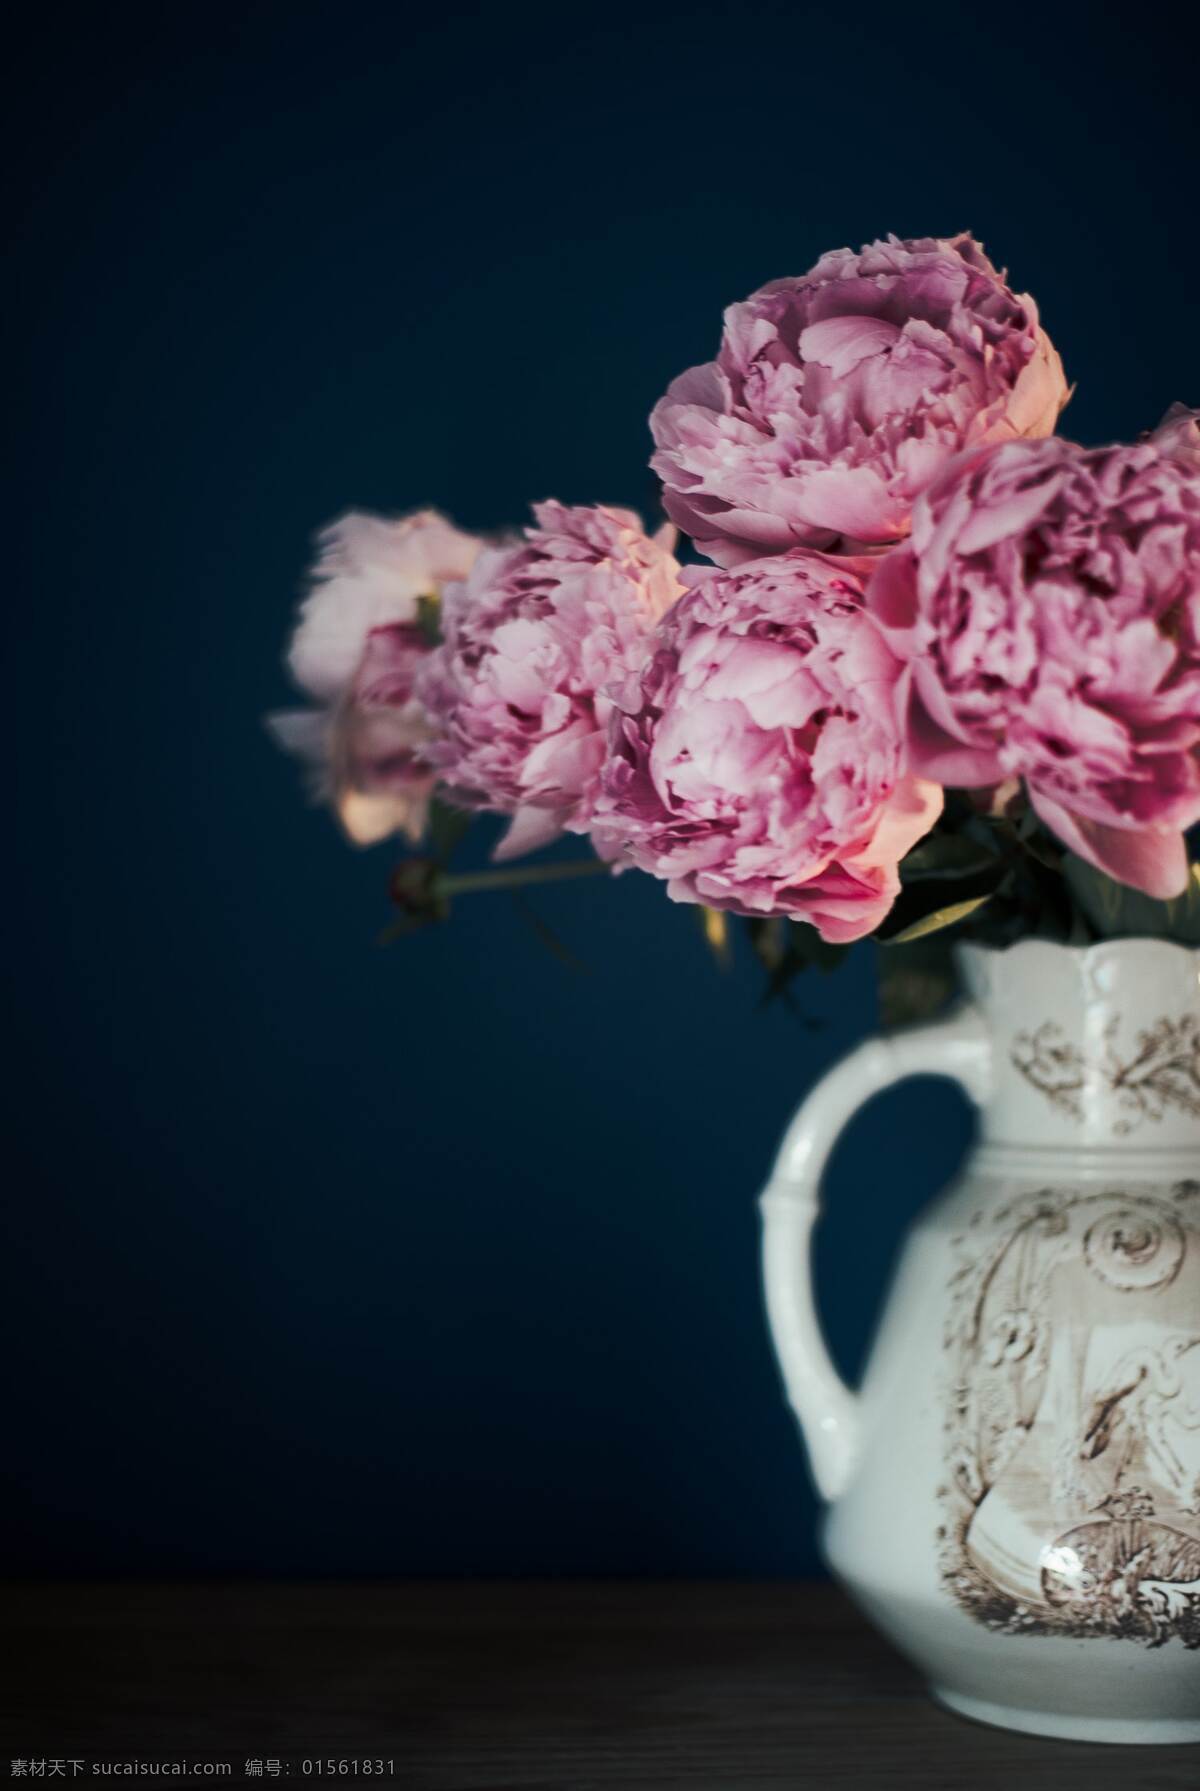 粉色花朵 花瓶 复古花瓶 康乃馨 自然景观 自然风景